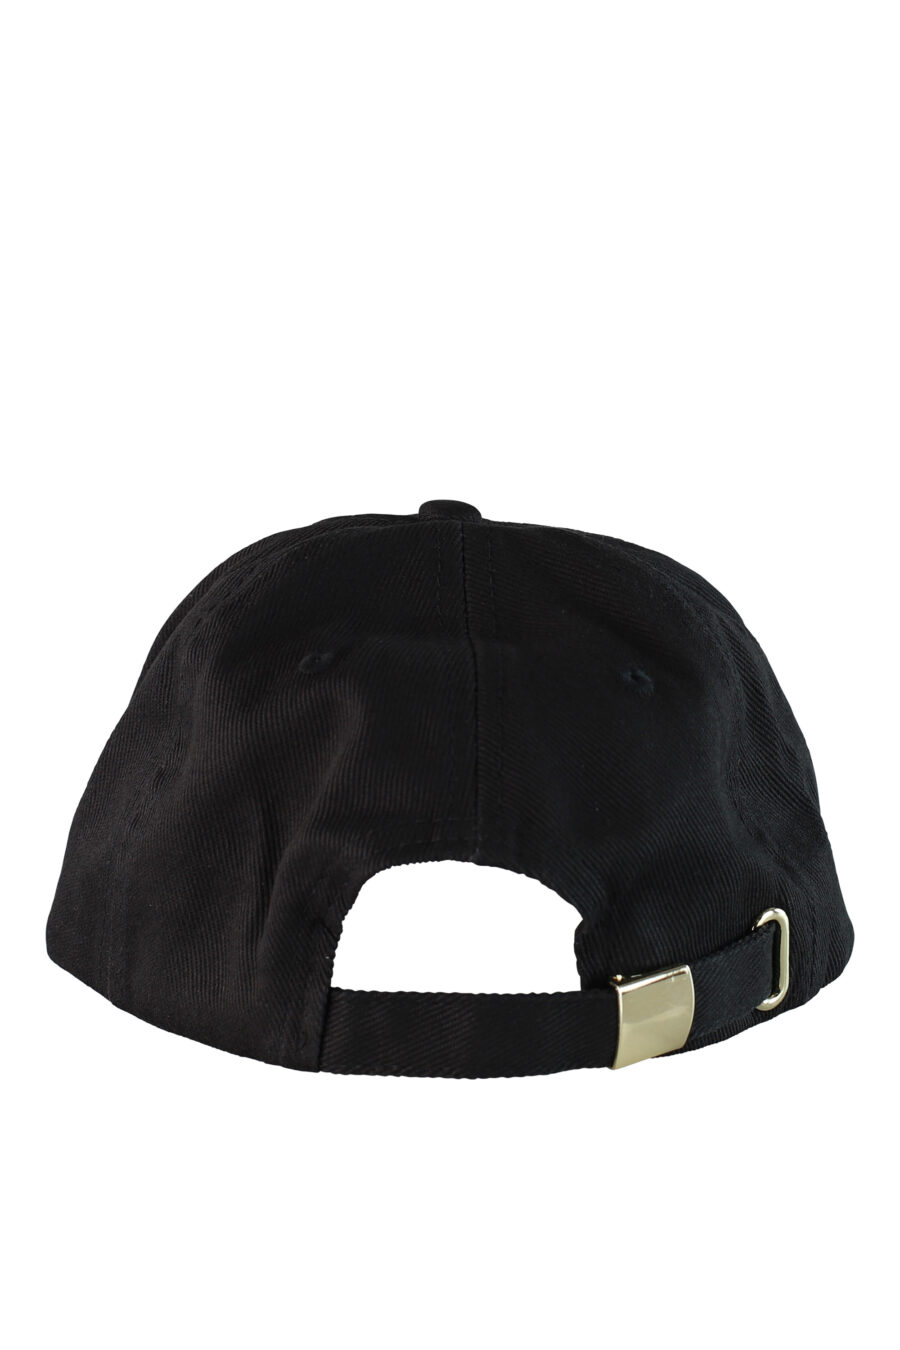 Gorra negra con logo circular dorado - IMG 0504